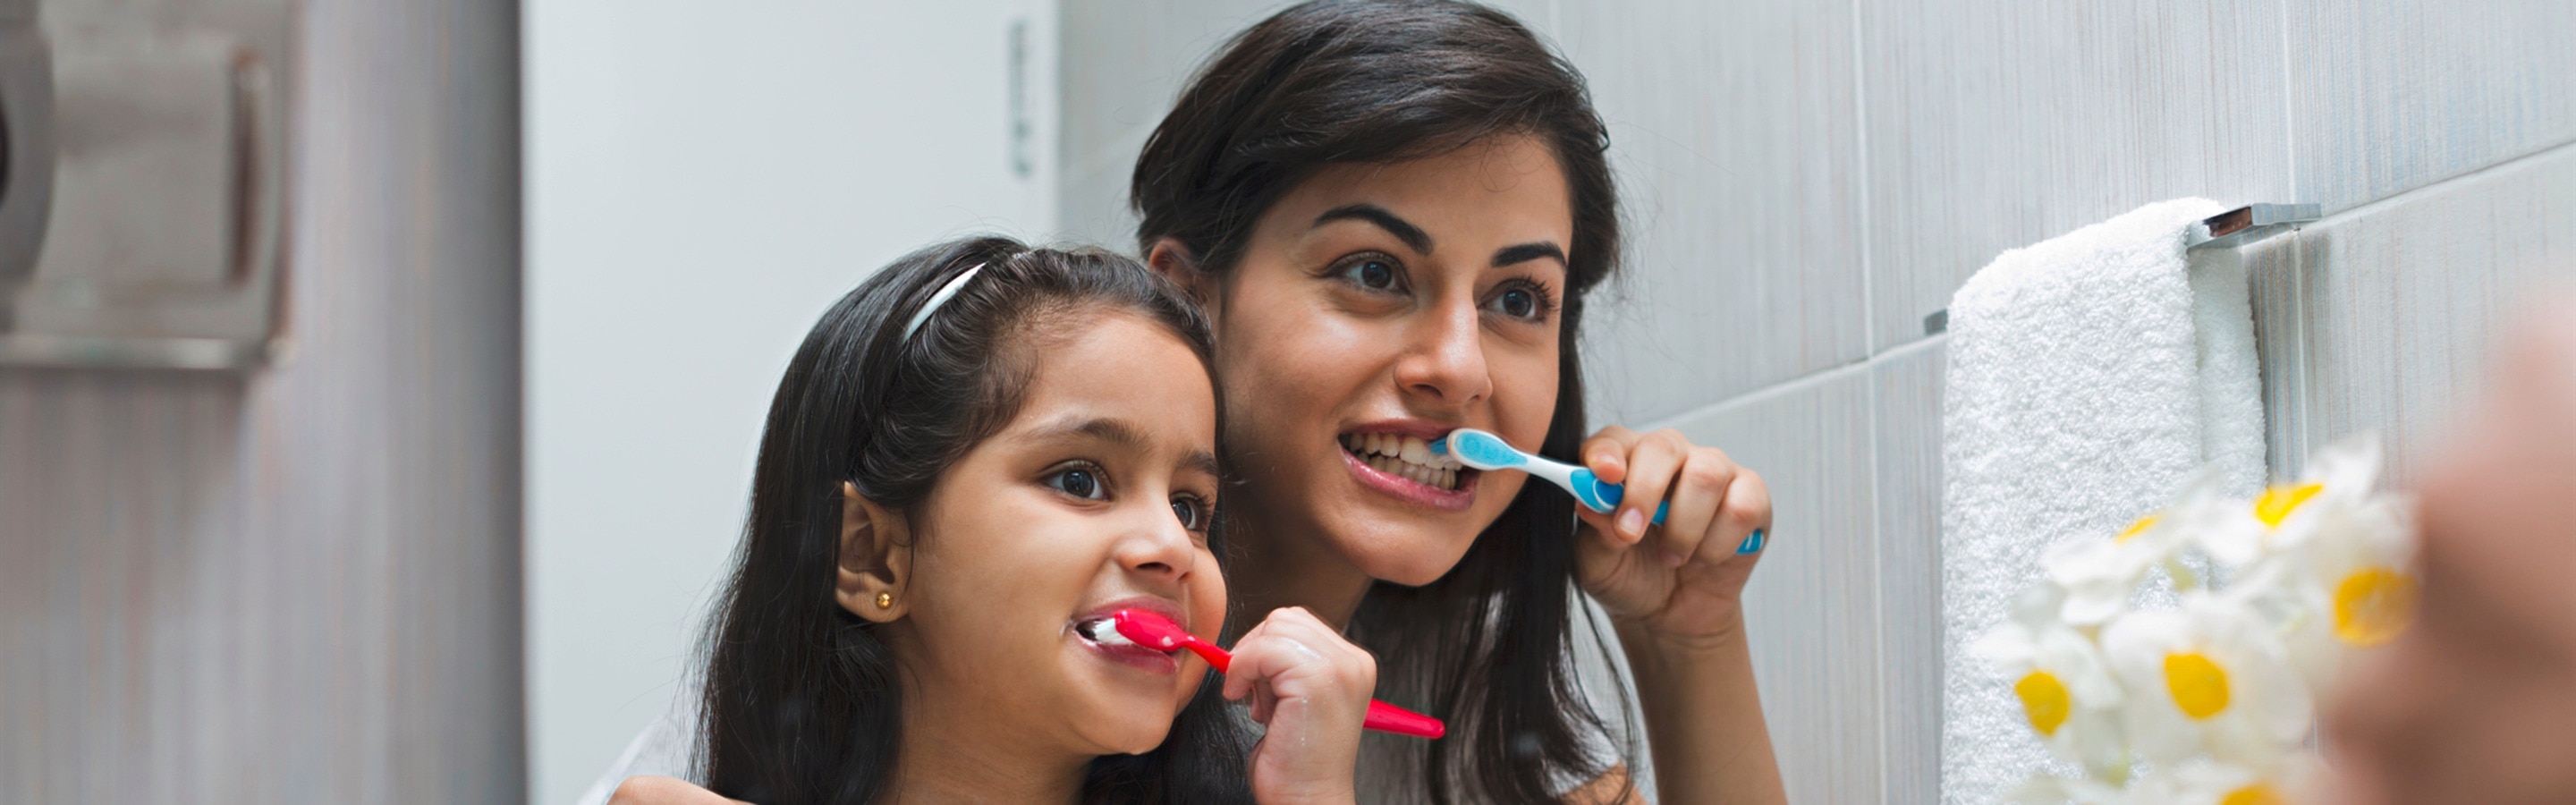 Co způsobuje zvýšenou citlivost zubů a jak se o ně starat